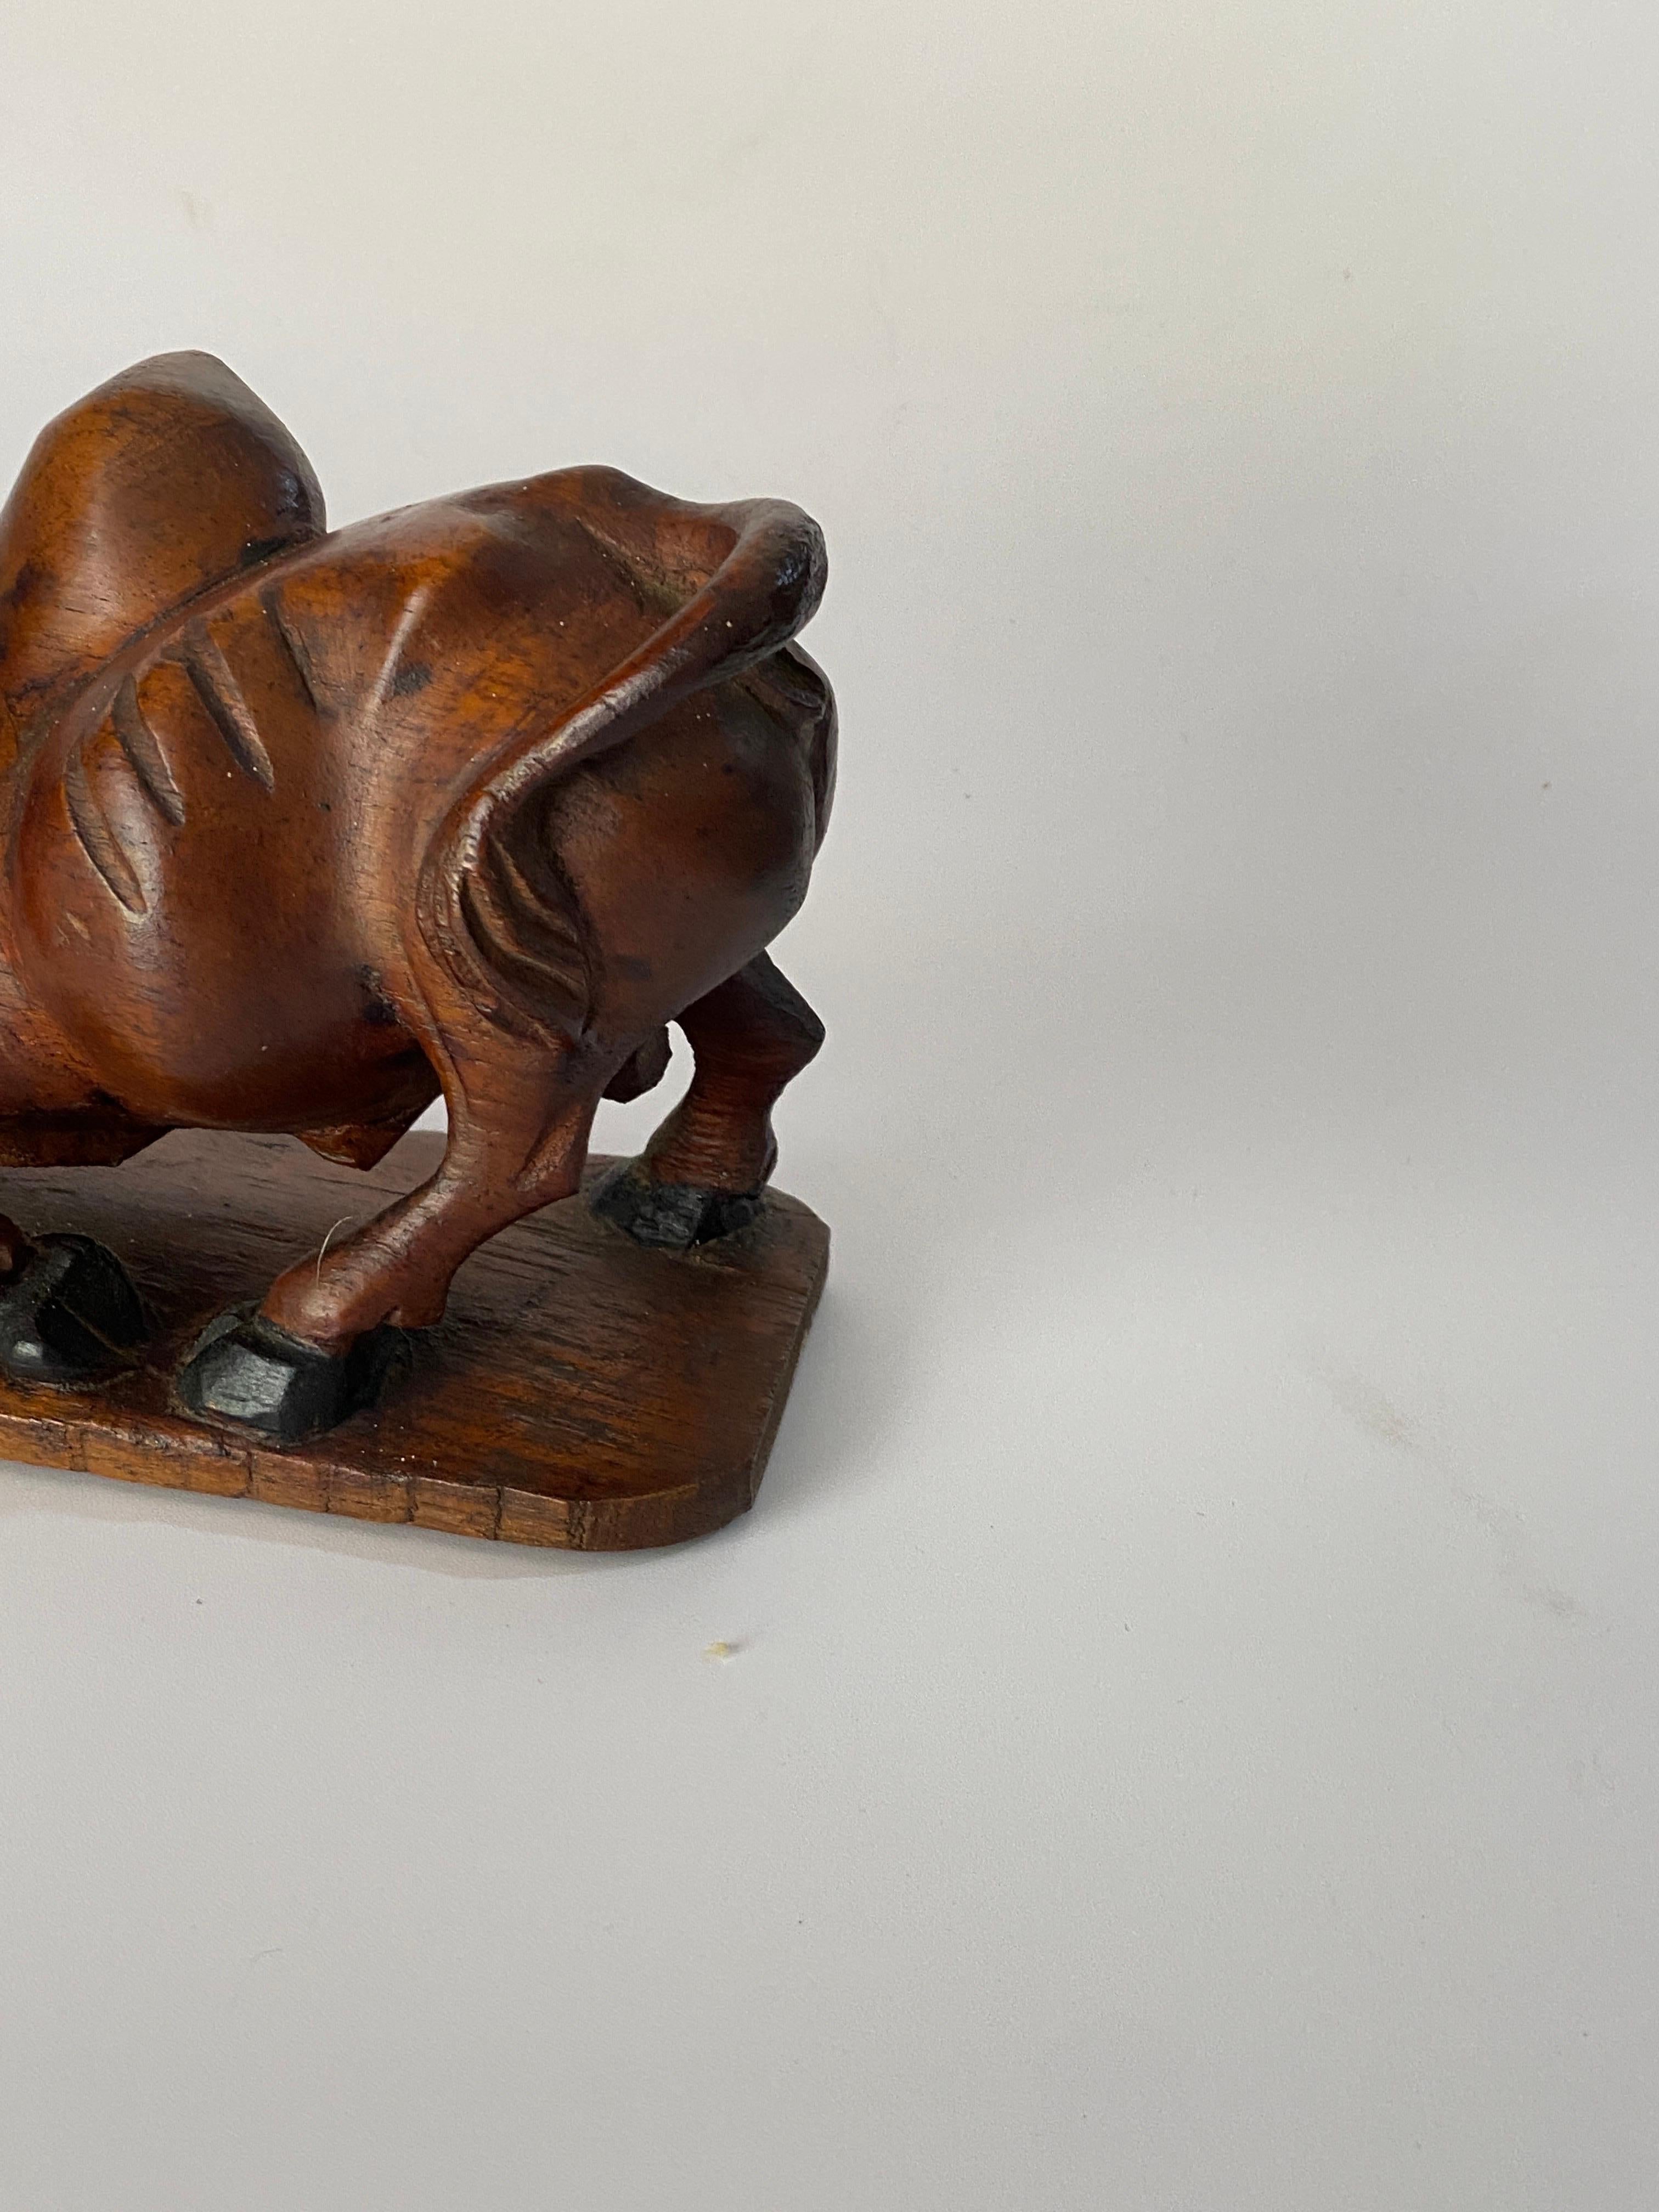 Sculpture en bois représentant un crocodile et un taureau en train de se battre. L'article est en bois, avec une ancienne patine, de couleur brune. Il a été fabriqué en France vers 1930.